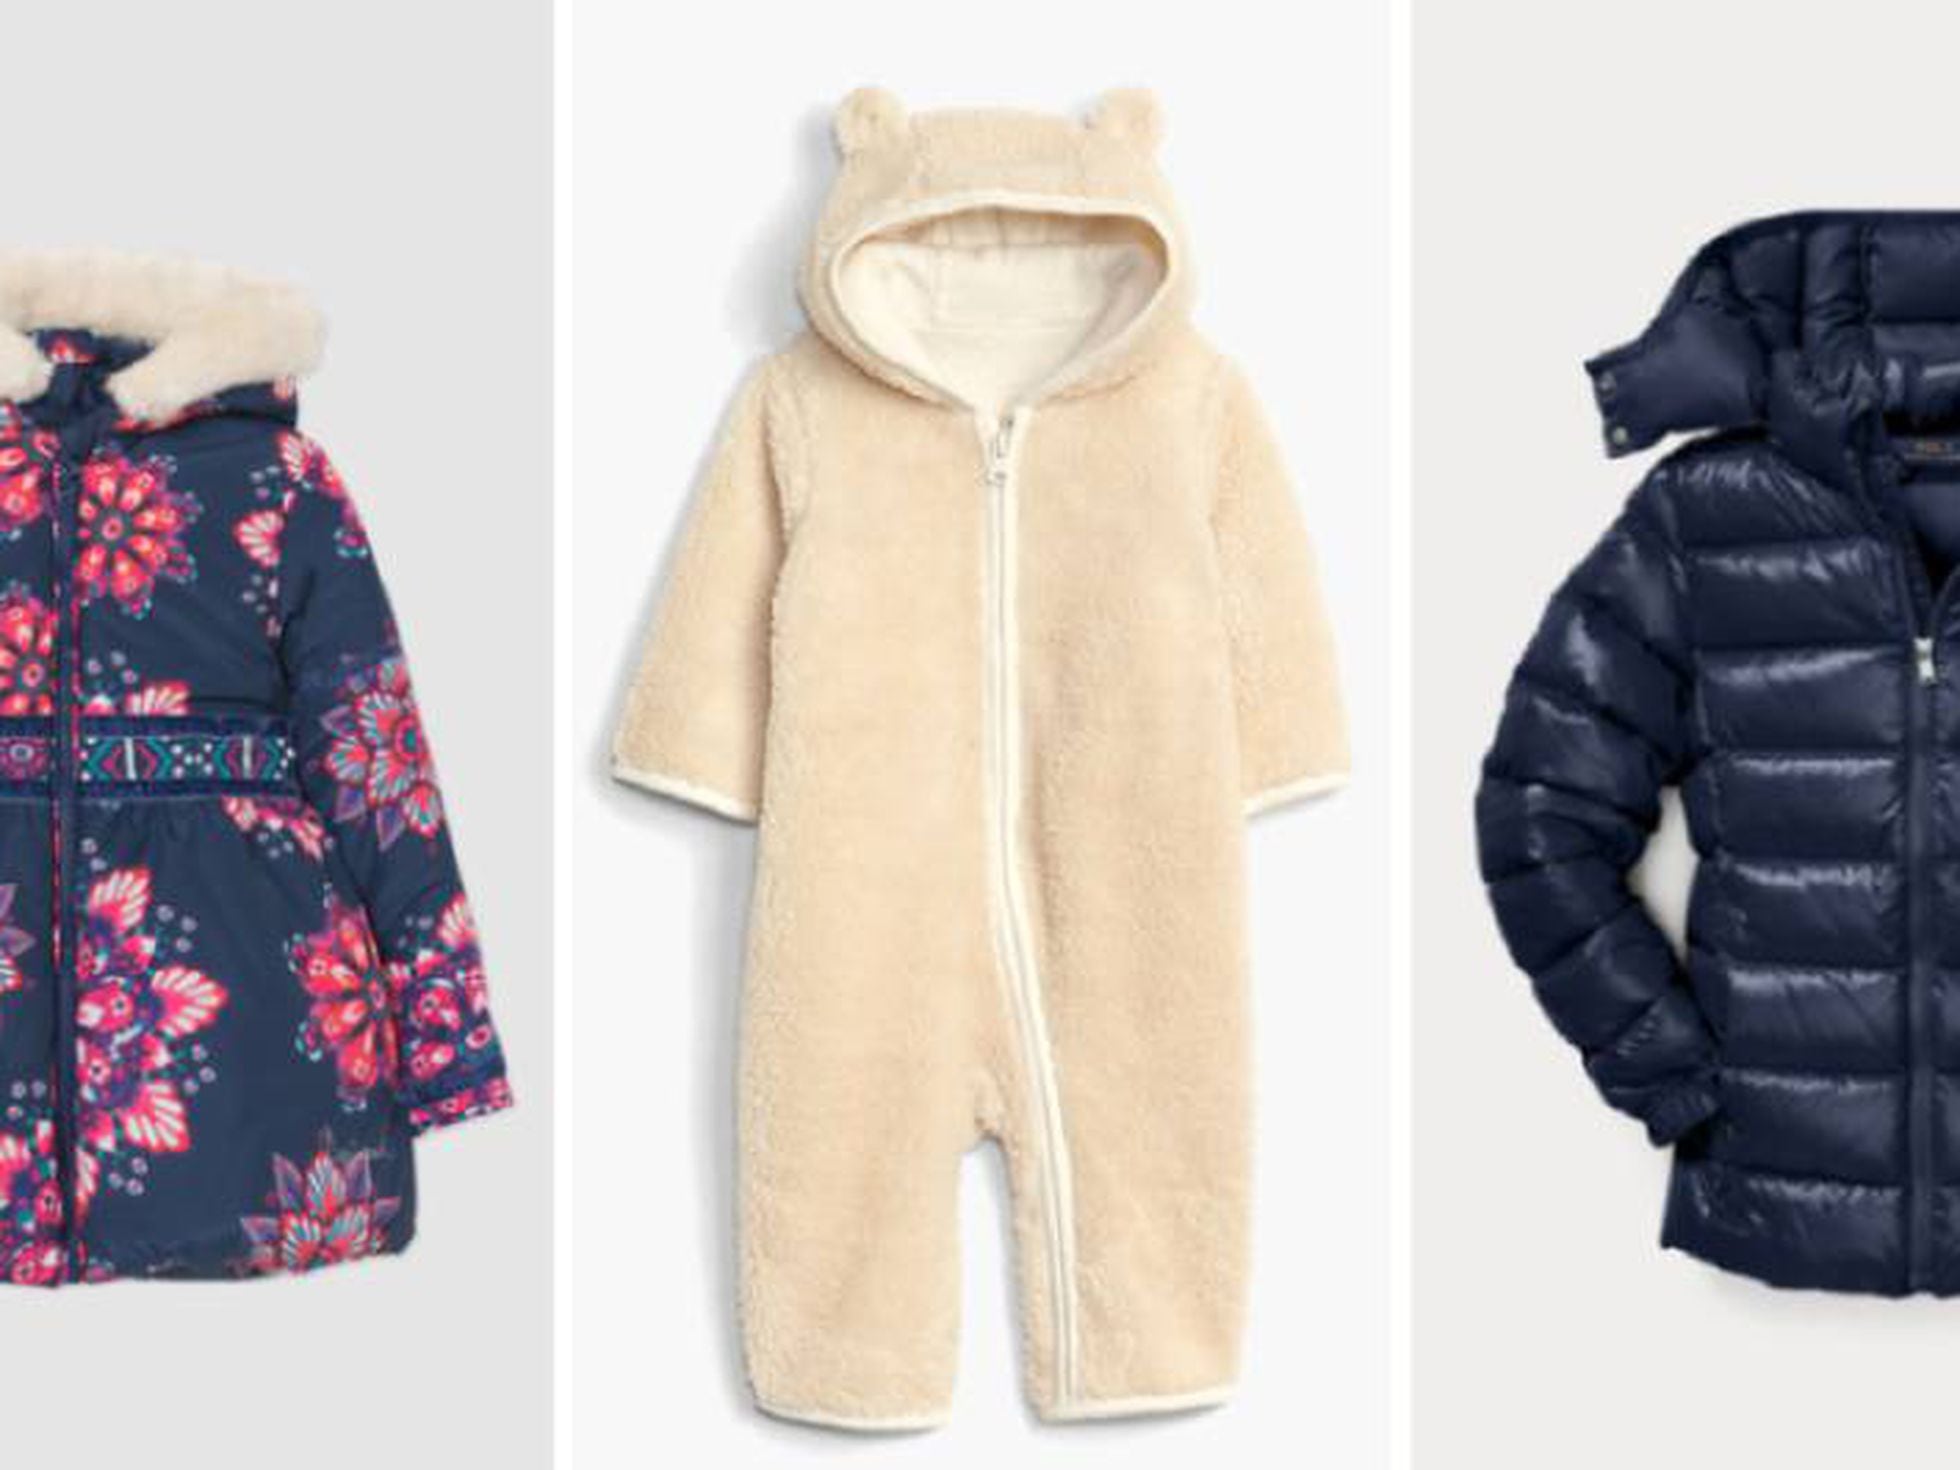 granero deshonesto Informar Rebajas 2019: las mejores ofertas en ropa de abrigo para bebés y niños |  Escaparate: compras y ofertas | EL PAÍS